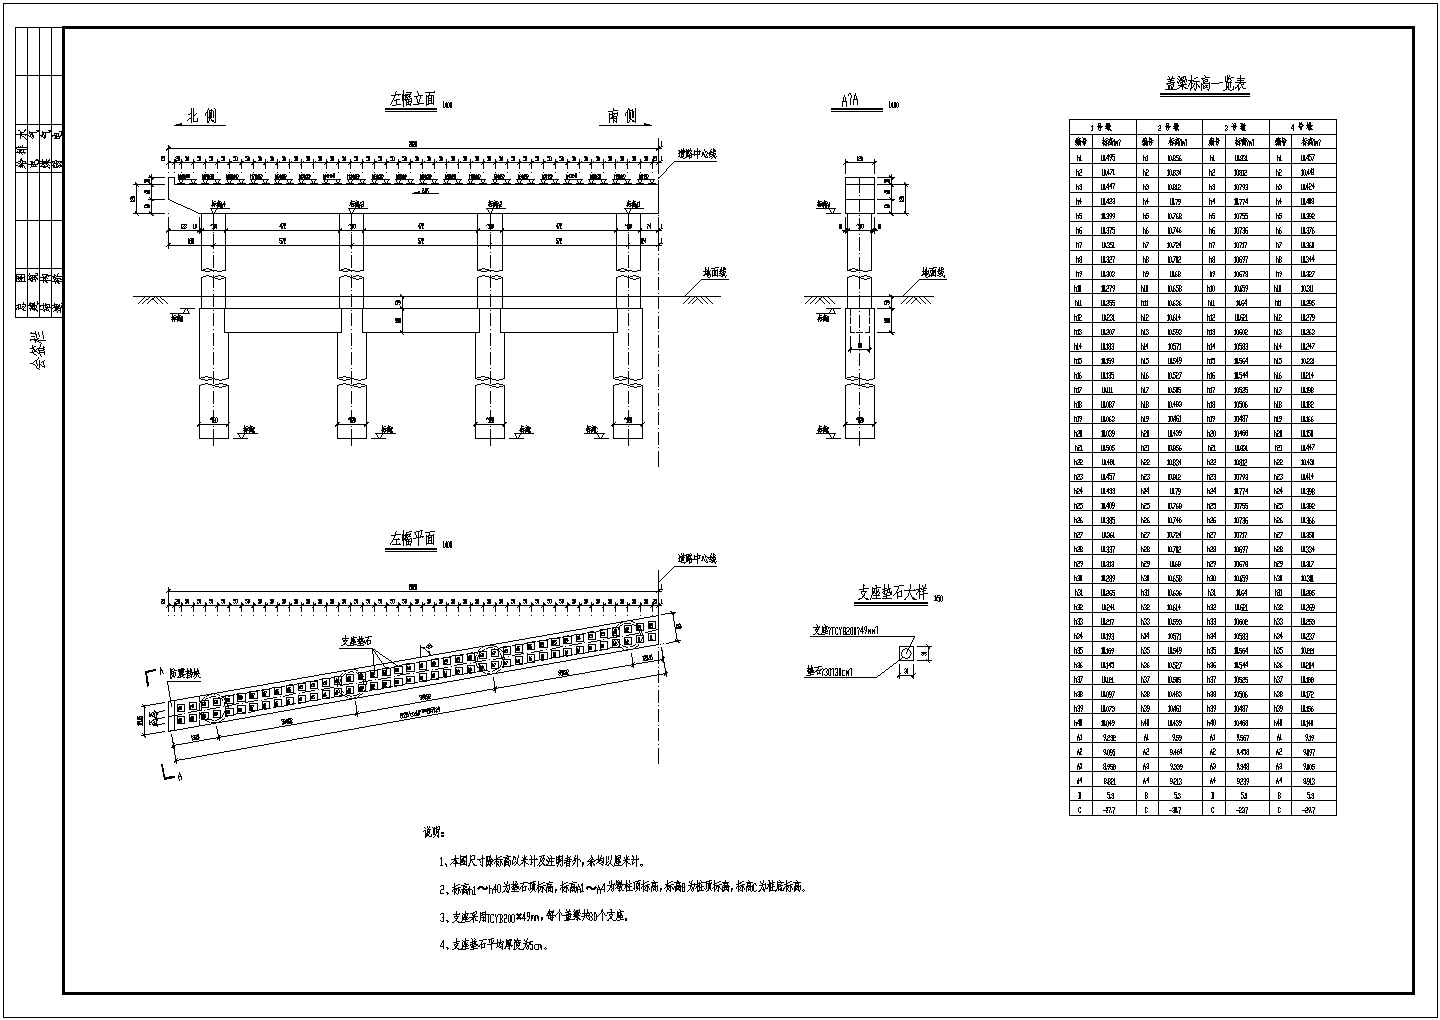 5x20m预应力空心板结构跨河桥设计图